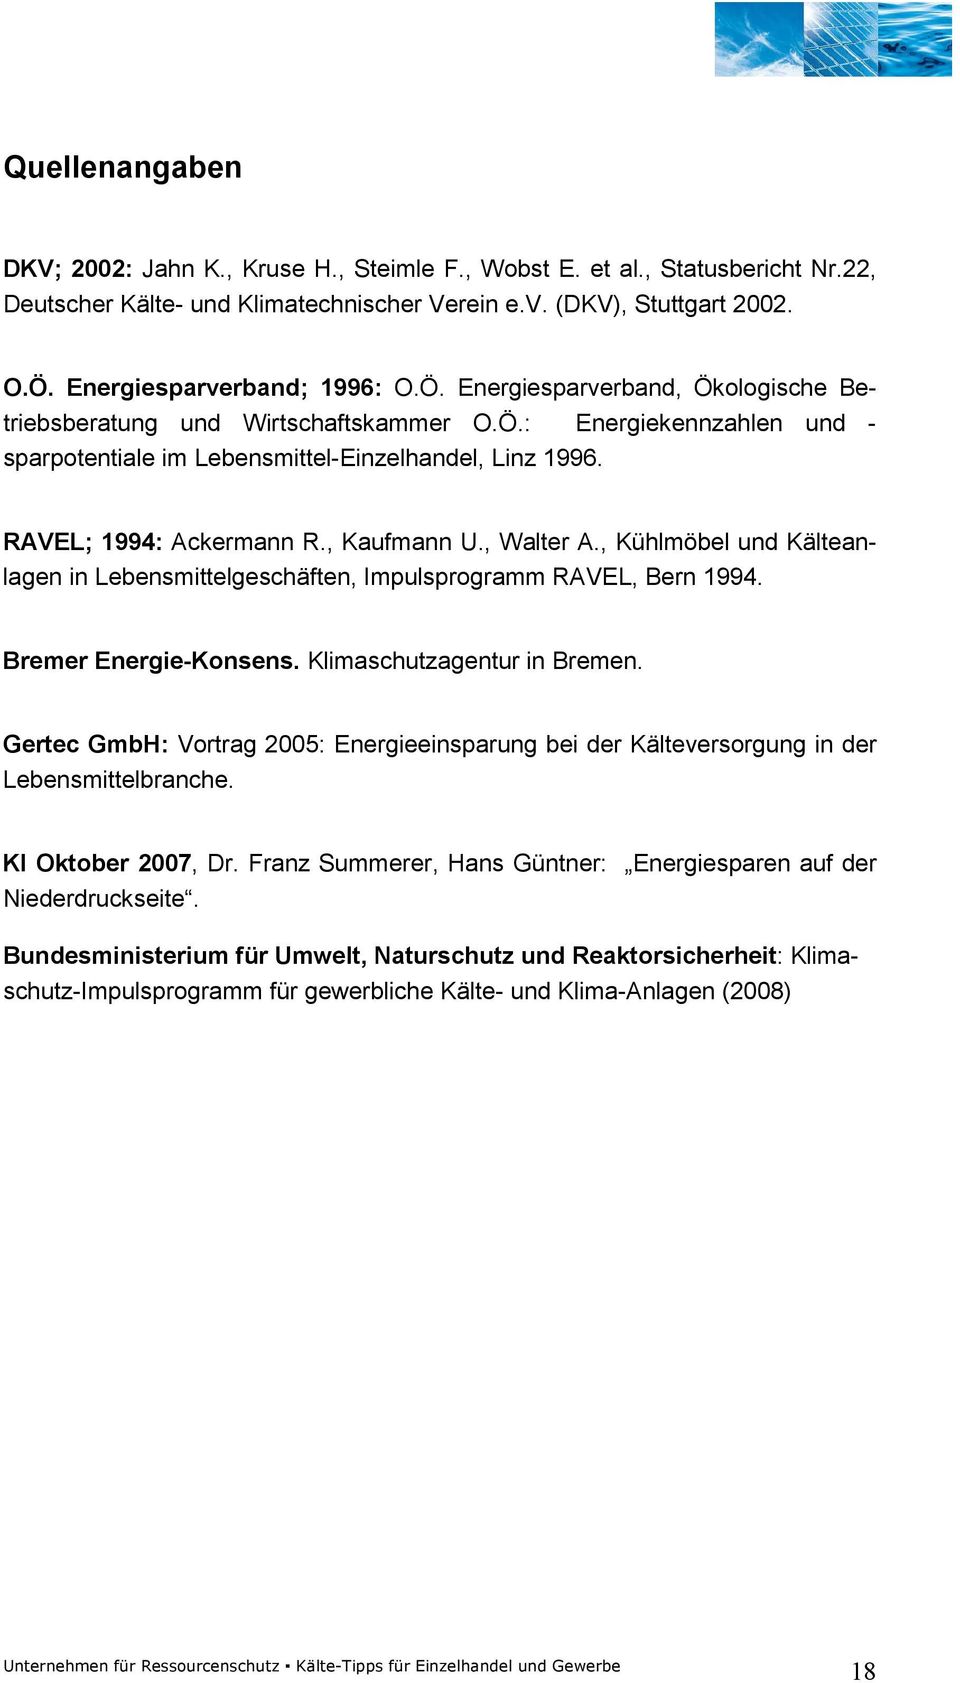 RAVEL; 1994: Ackermann R., Kaufmann U., Walter A., Kühlmöbel und Kälteanlagen in Lebensmittelgeschäften, Impulsprogramm RAVEL, Bern 1994. Bremer Energie-Konsens. Klimaschutzagentur in Bremen.